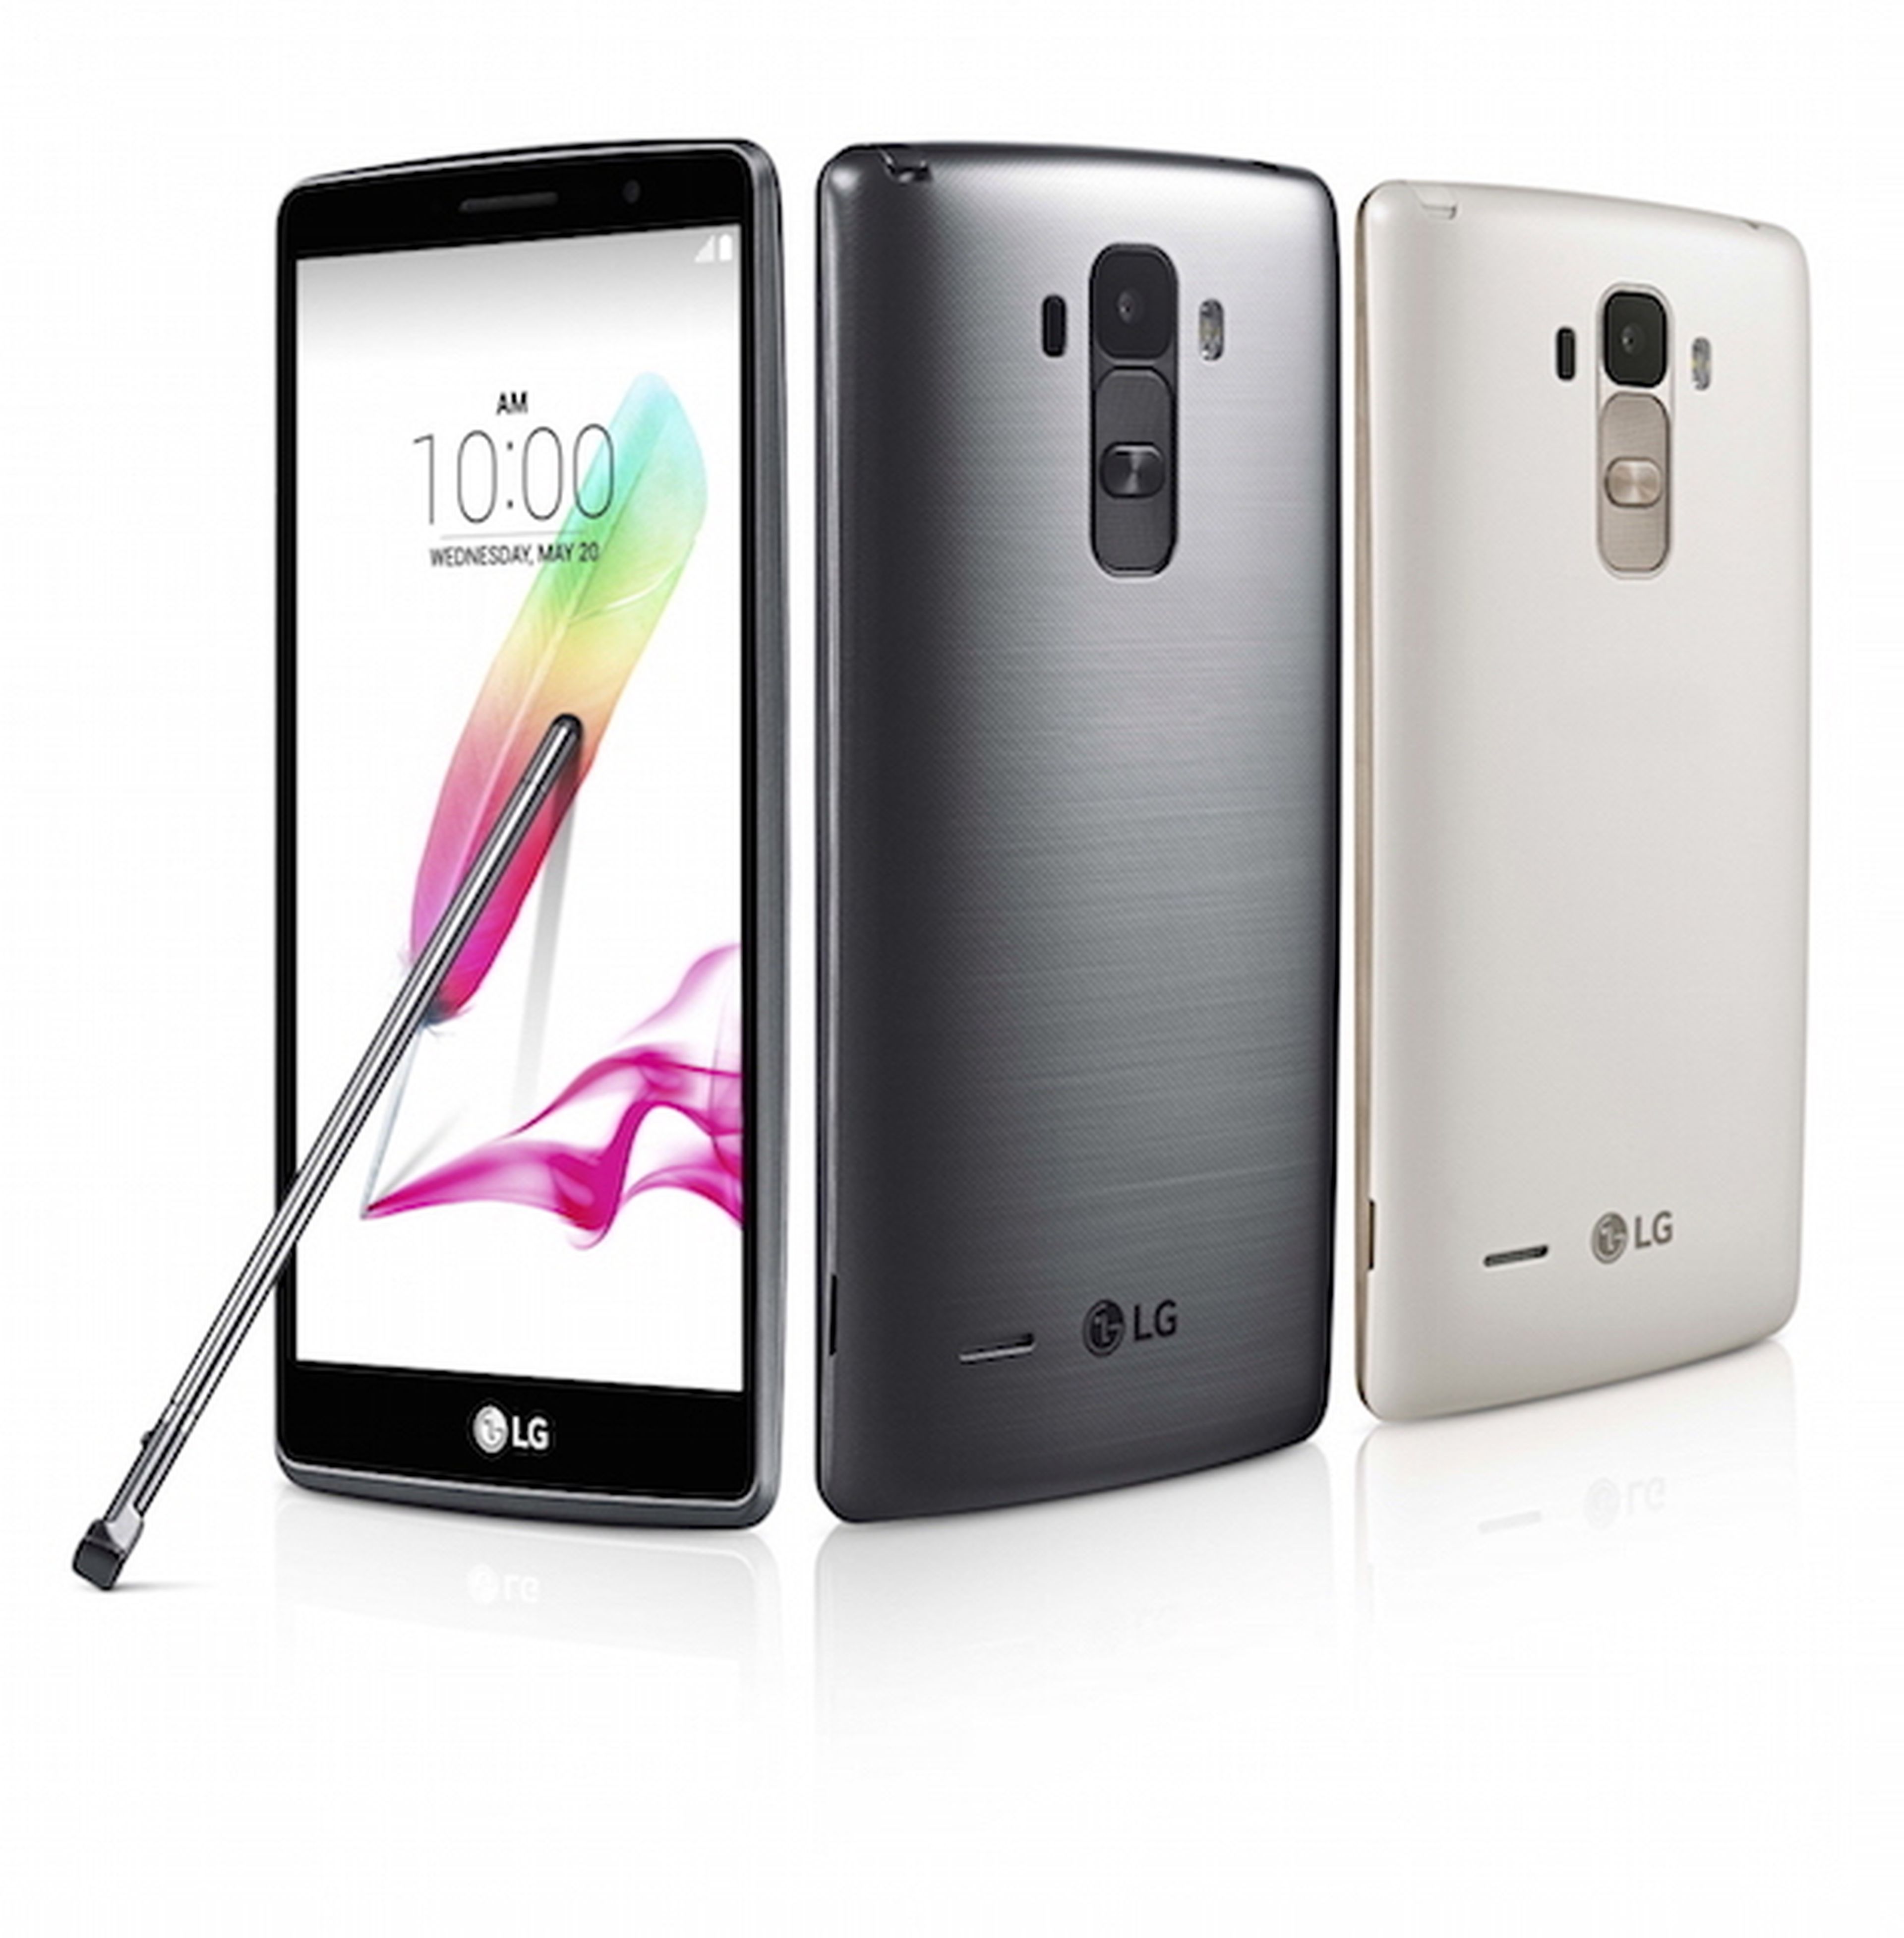 LG G4 Stylus y LG G4c: presentados los nuevos smartphones de LG | Computer  Hoy